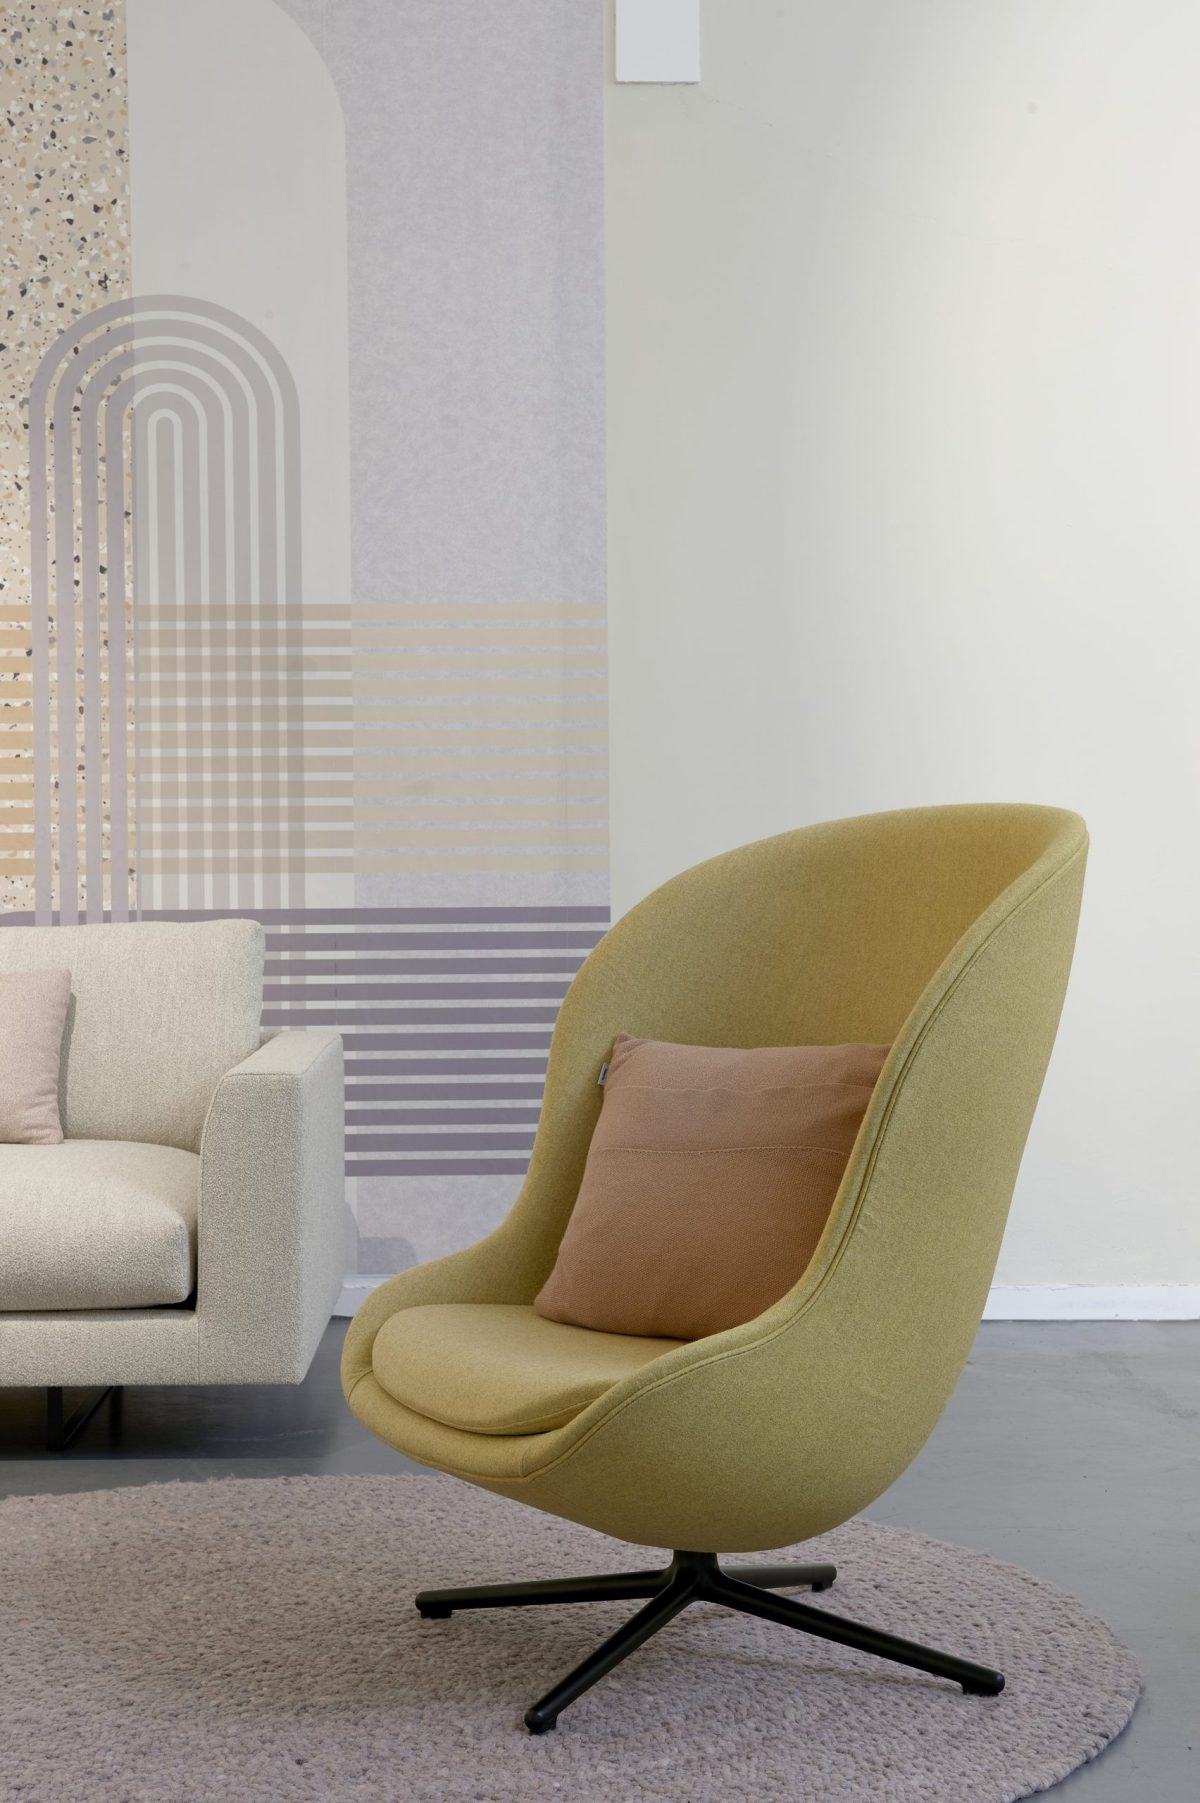 flow lab rotterdam woonwinkel sfeerafbeelding showroom fauteuil geel normann copenhagen